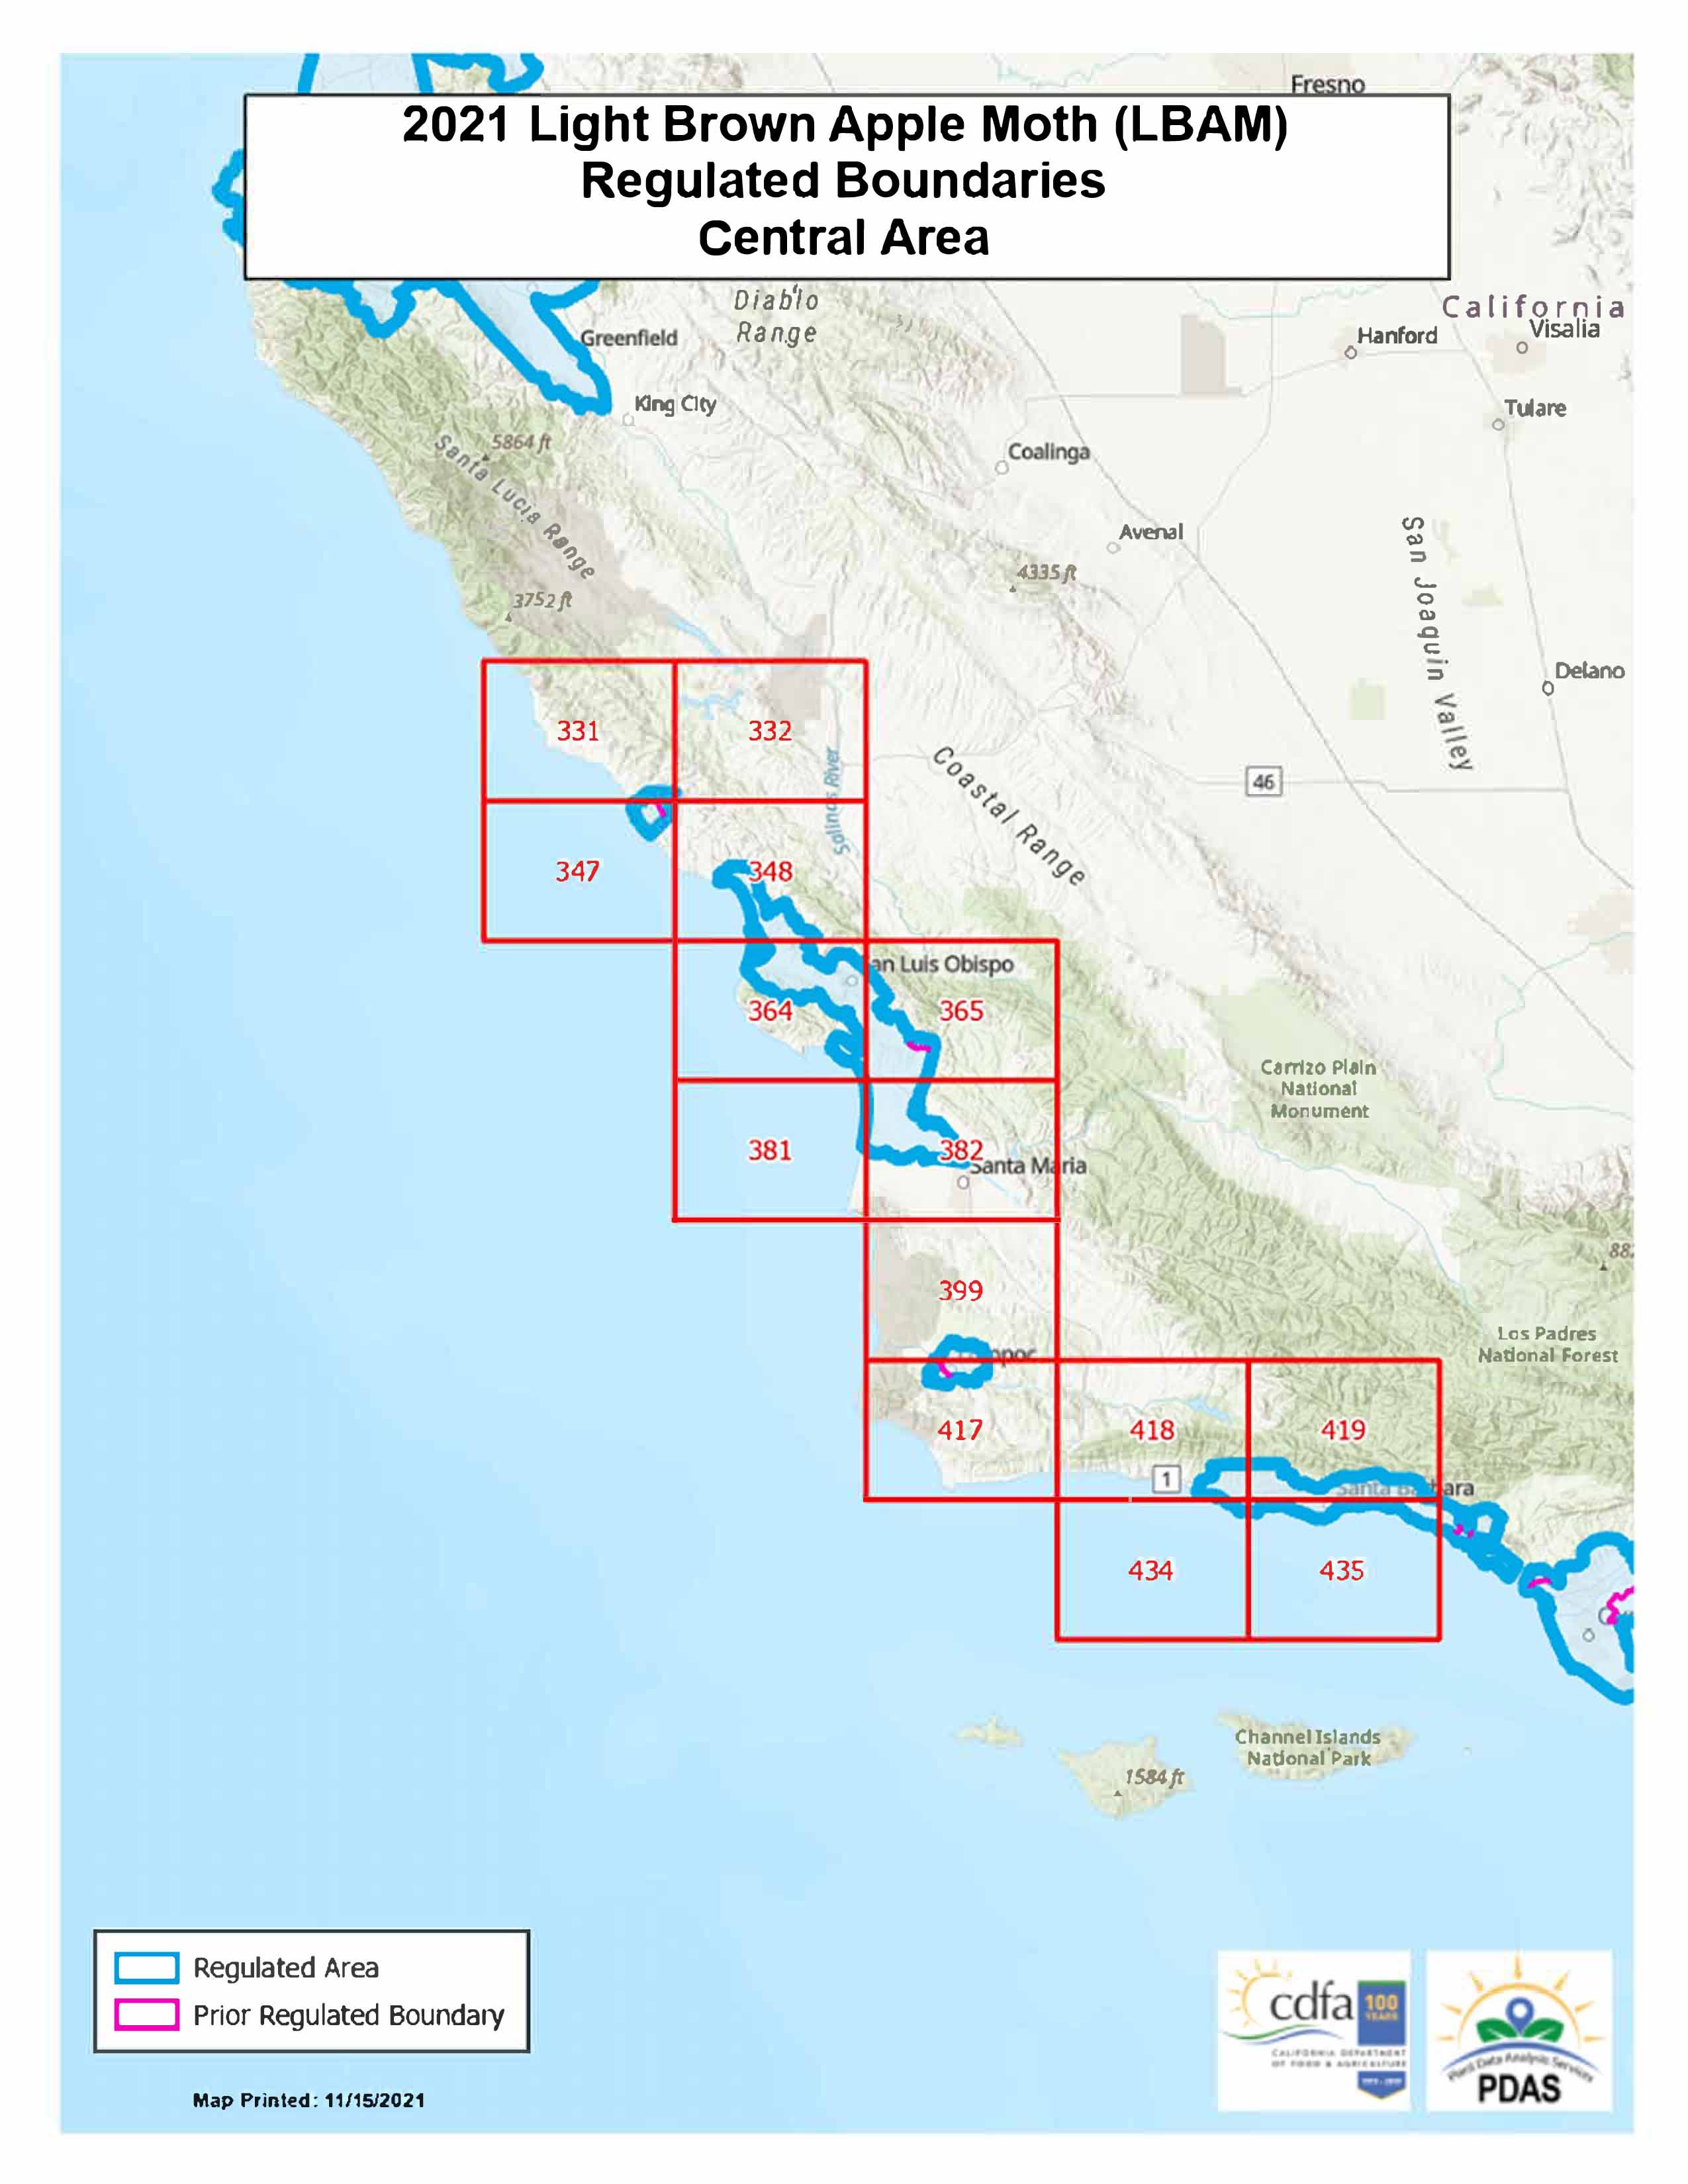 LBAM Boundaries | Central Area of California